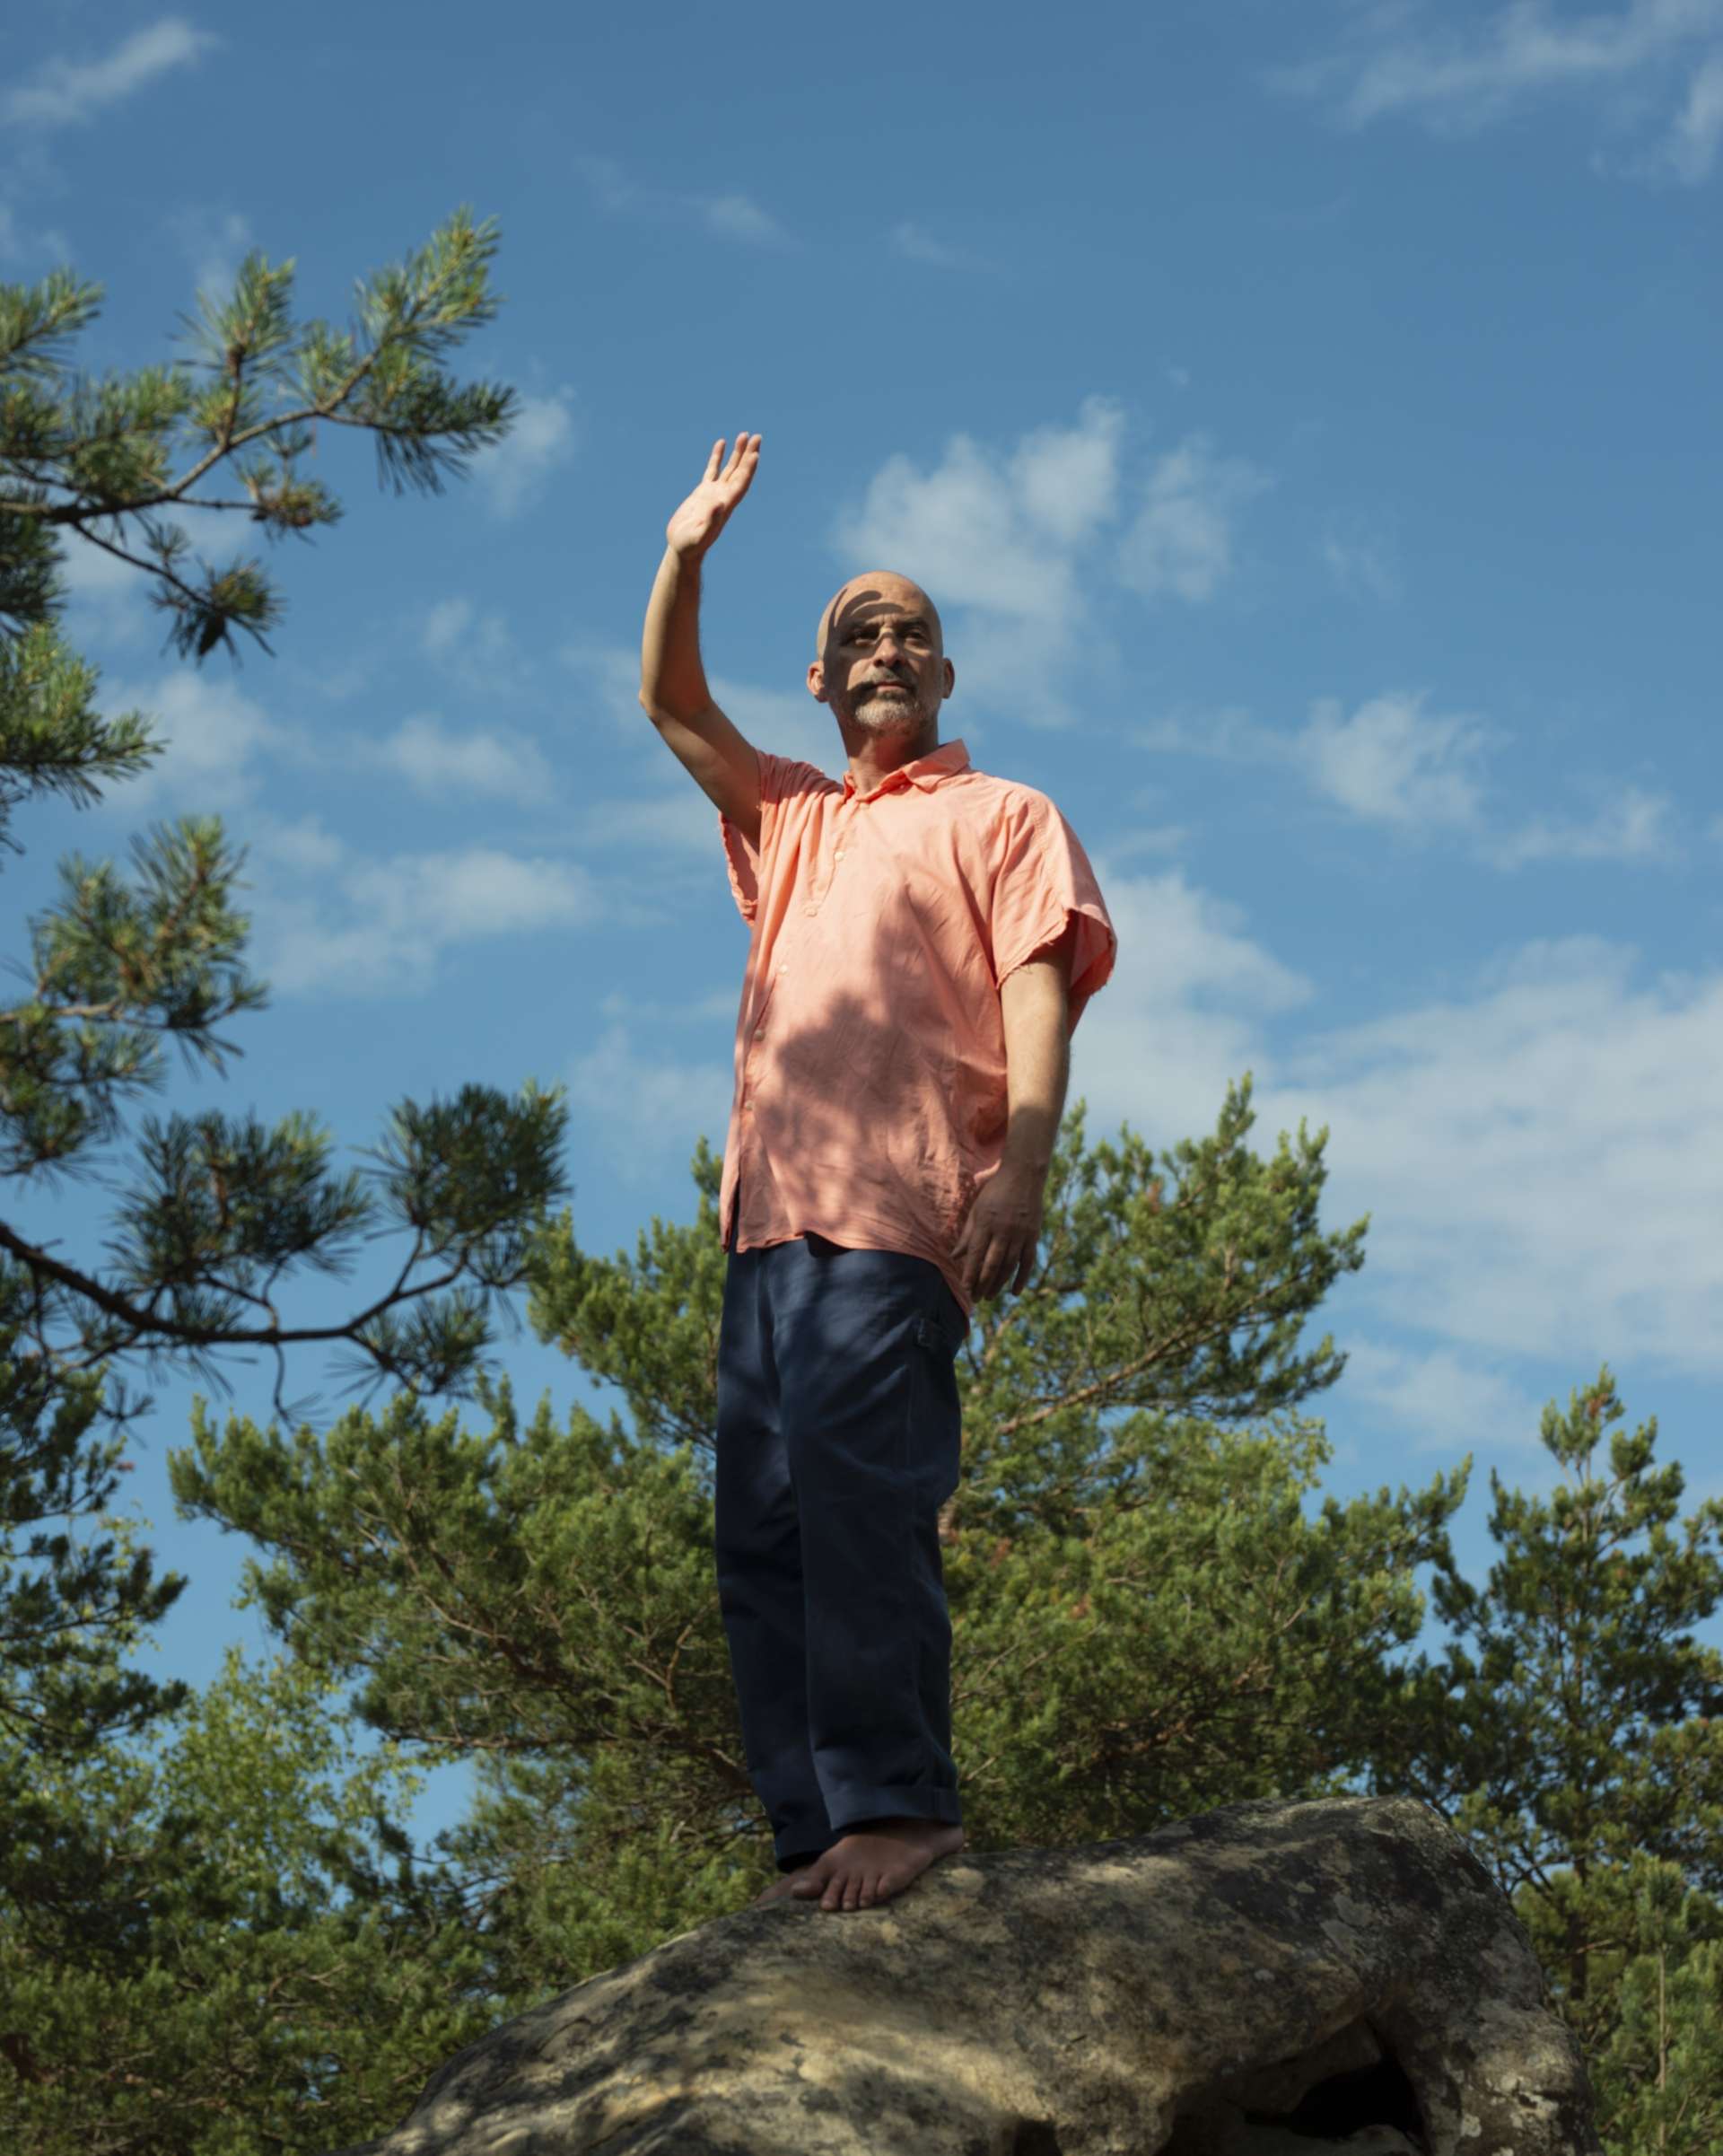 Lucas Santtana est en pleine nature, debout sur un rocher, et lève sa main droite vers le ciel bleu comme pour saluer. 